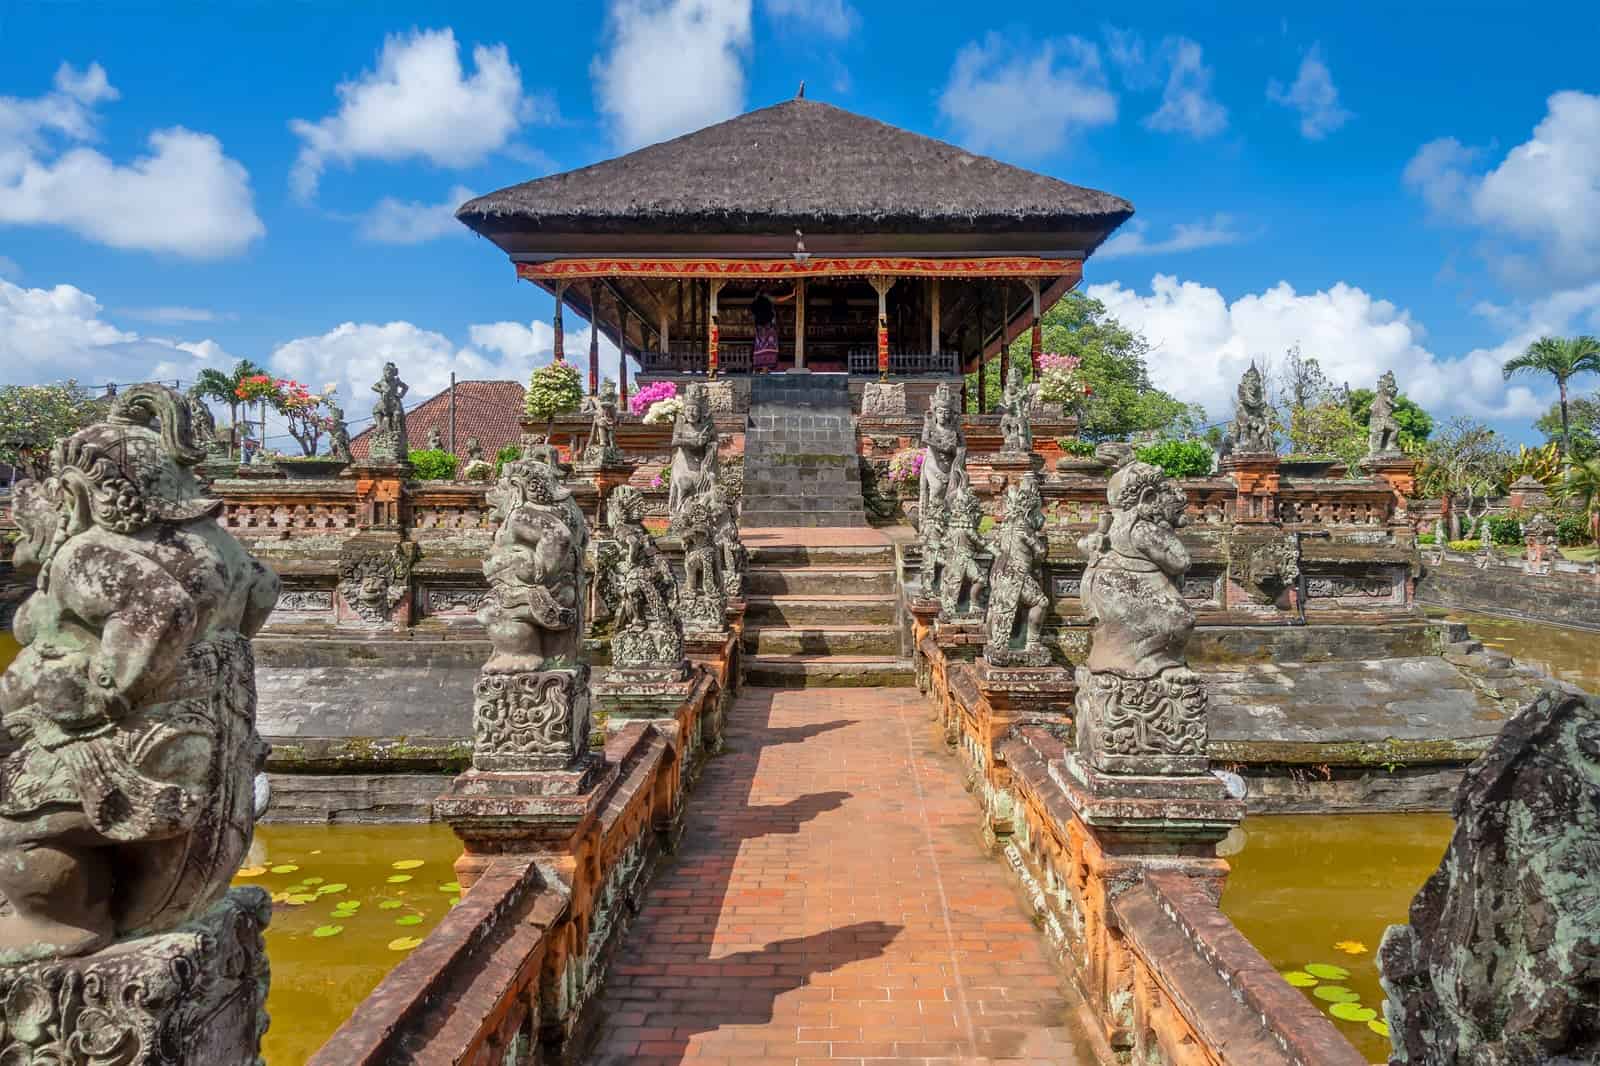 kinh nghiệm đi tour du lịch cung điện Bali Kerta Gosa tự túc và những địa điểm đẹp trên bản đồ du lịch ở Bali